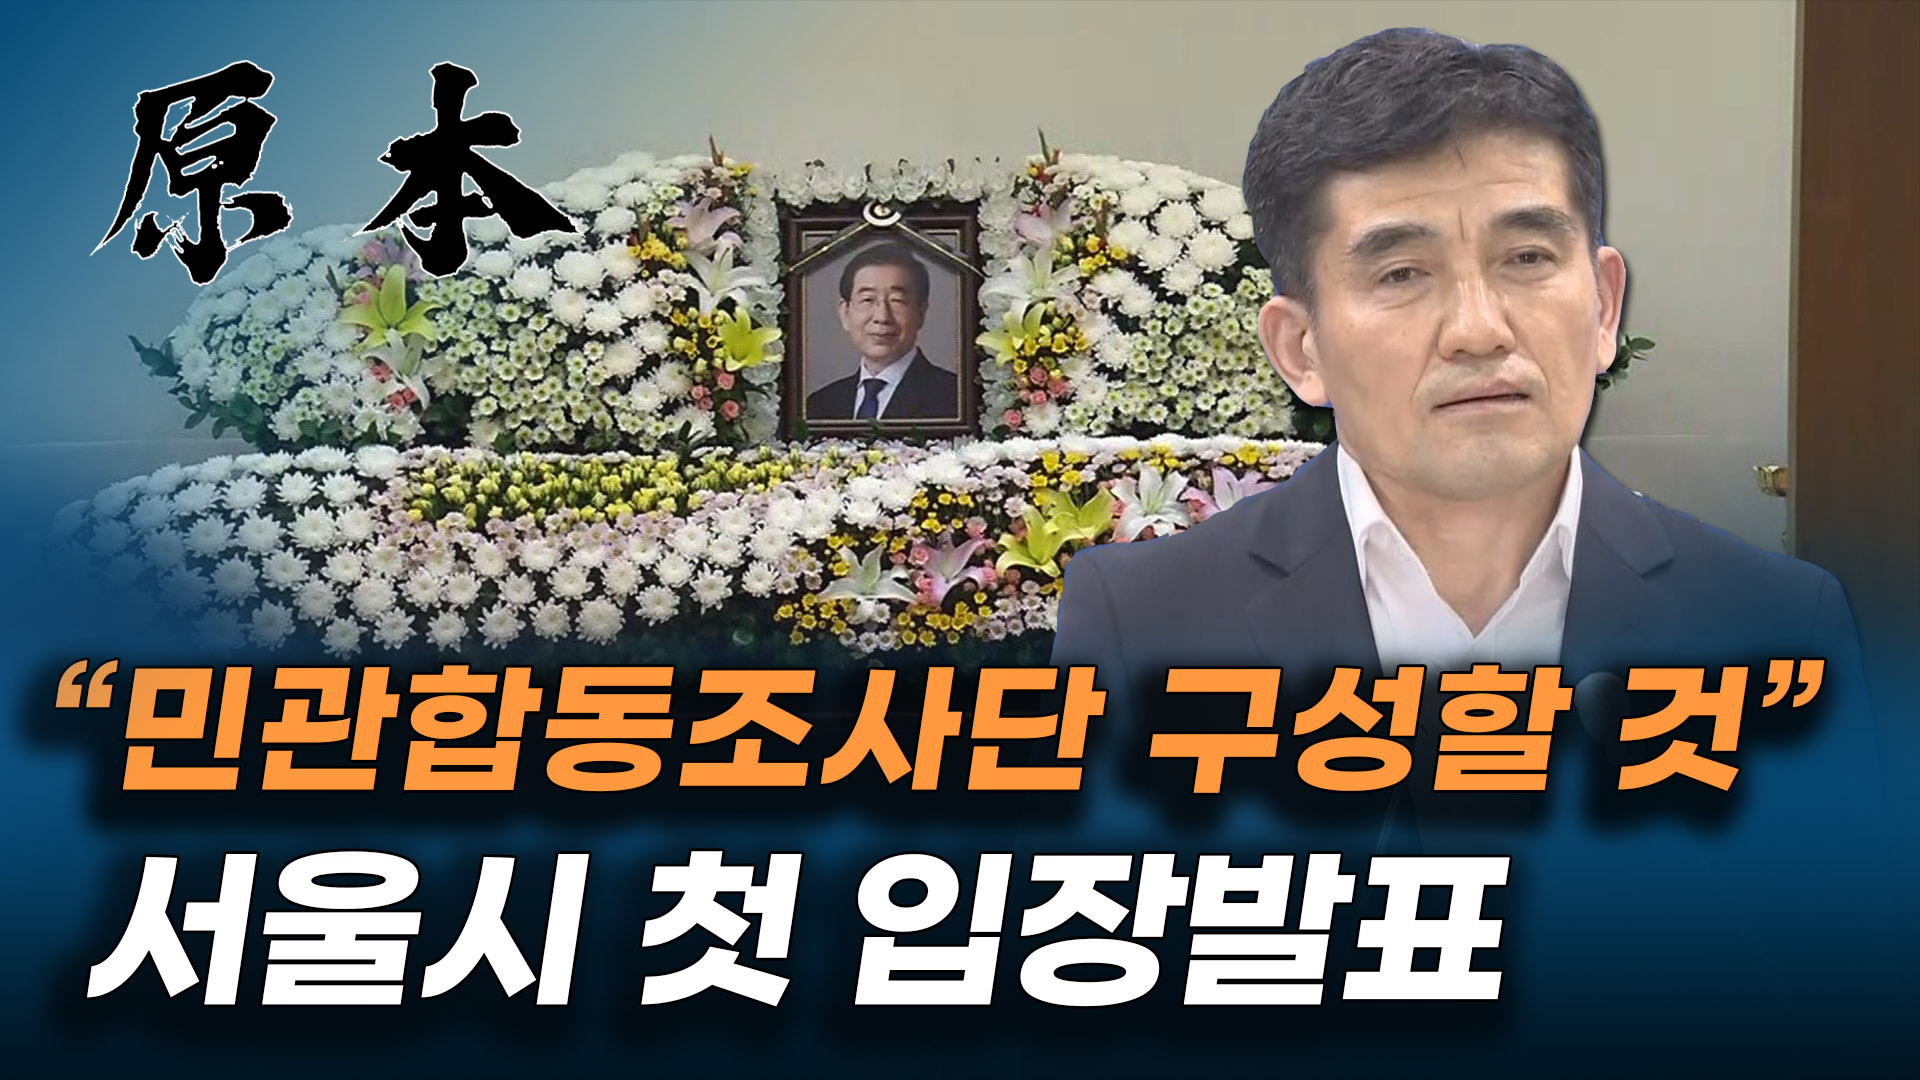 '박원순 성추행 논란 관련 진상규명' 서울시의 첫 입장 발표 [원본] 게시글 이미지